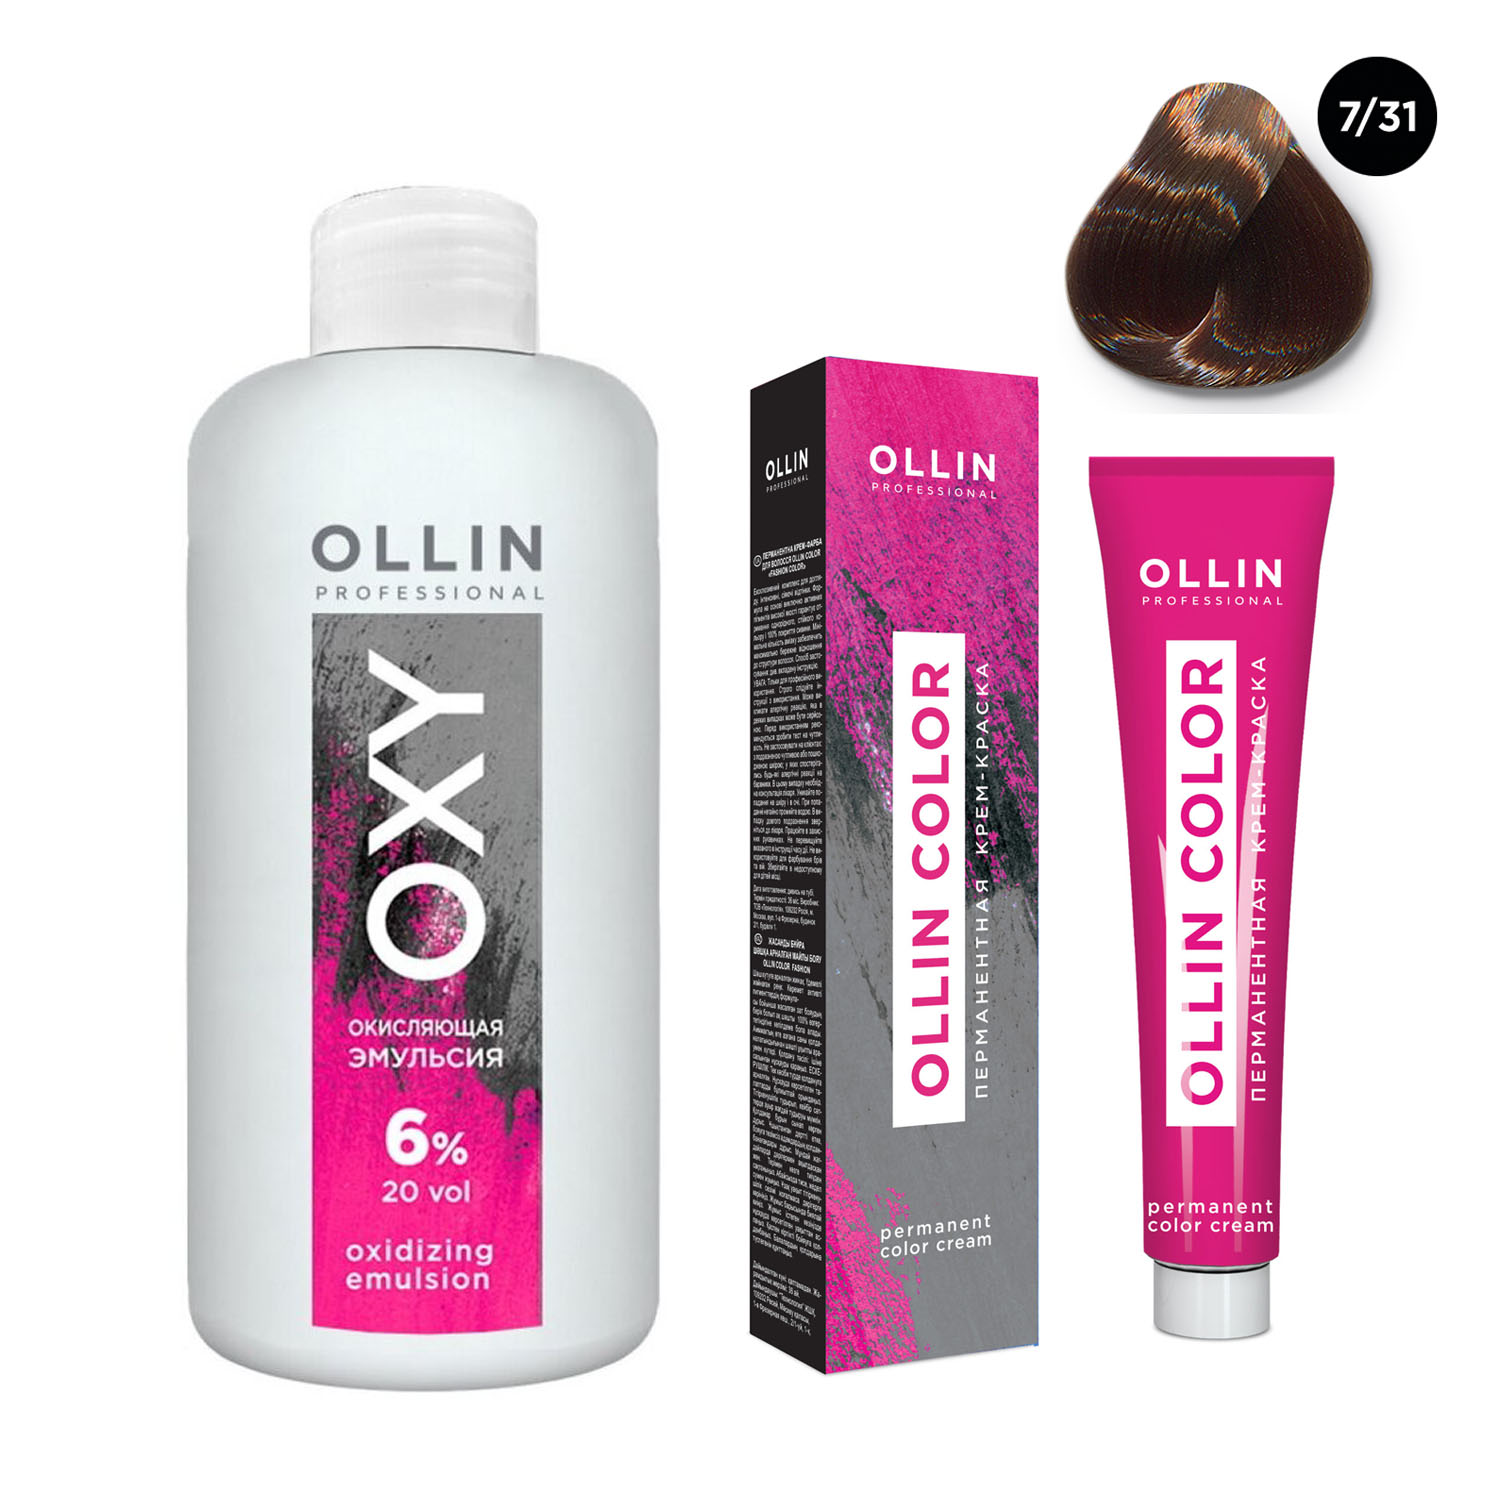 цена Ollin Professional Набор Перманентная крем-краска для волос Ollin Color оттенок 7/31 русый золотисто-пепельный 100 мл + Окисляющая эмульсия Oxy 6% 150 мл (Ollin Professional, Ollin Color)